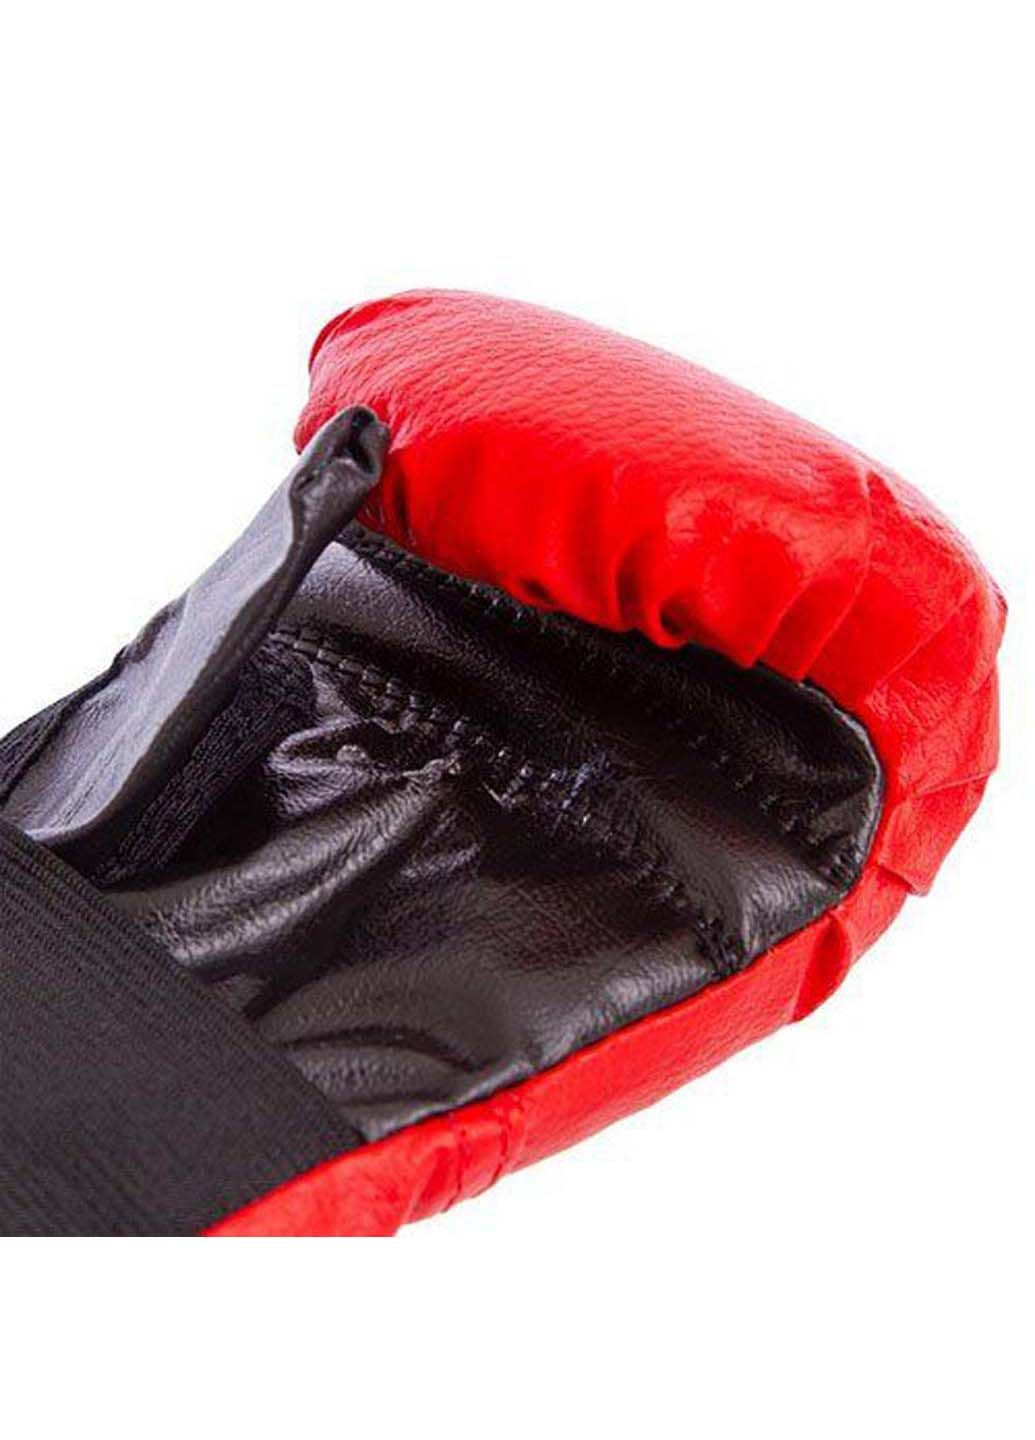 Перчатки боксерские детские PD-2 7oz Sportko (285794284)